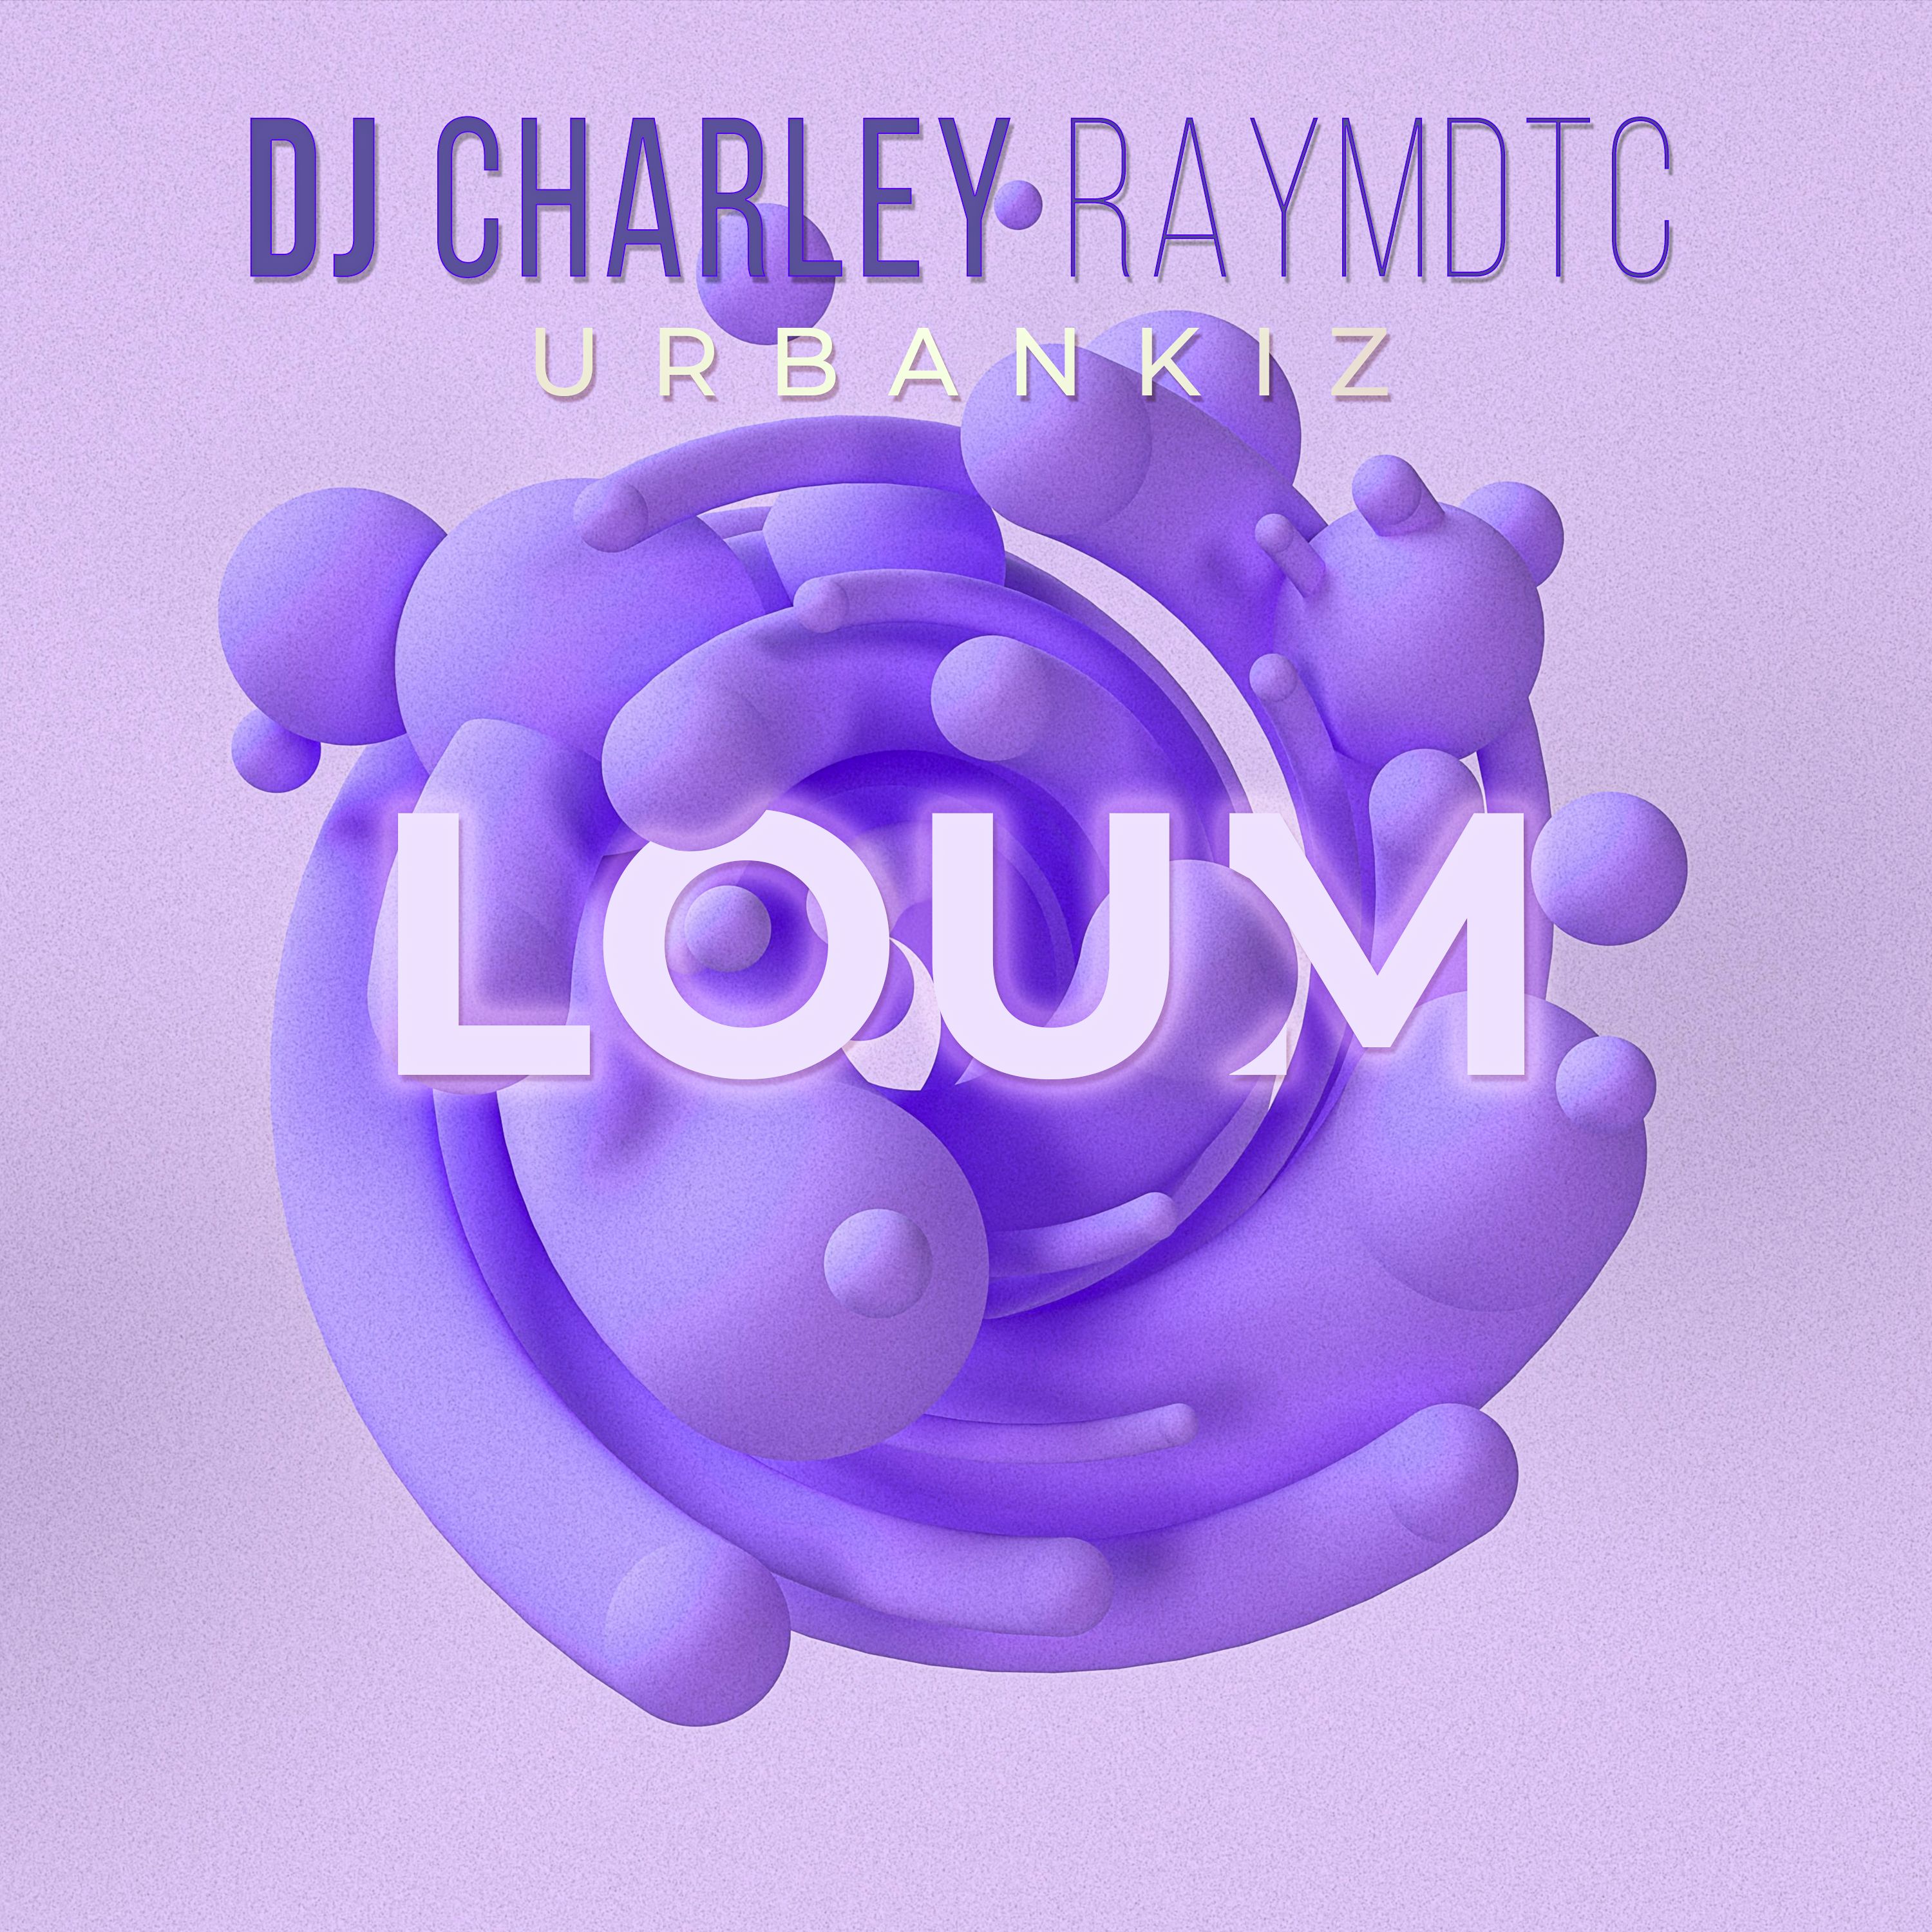 ഡൗൺലോഡ് DJ Charley Raymdtc - Loum (Ubankiz 2022 )